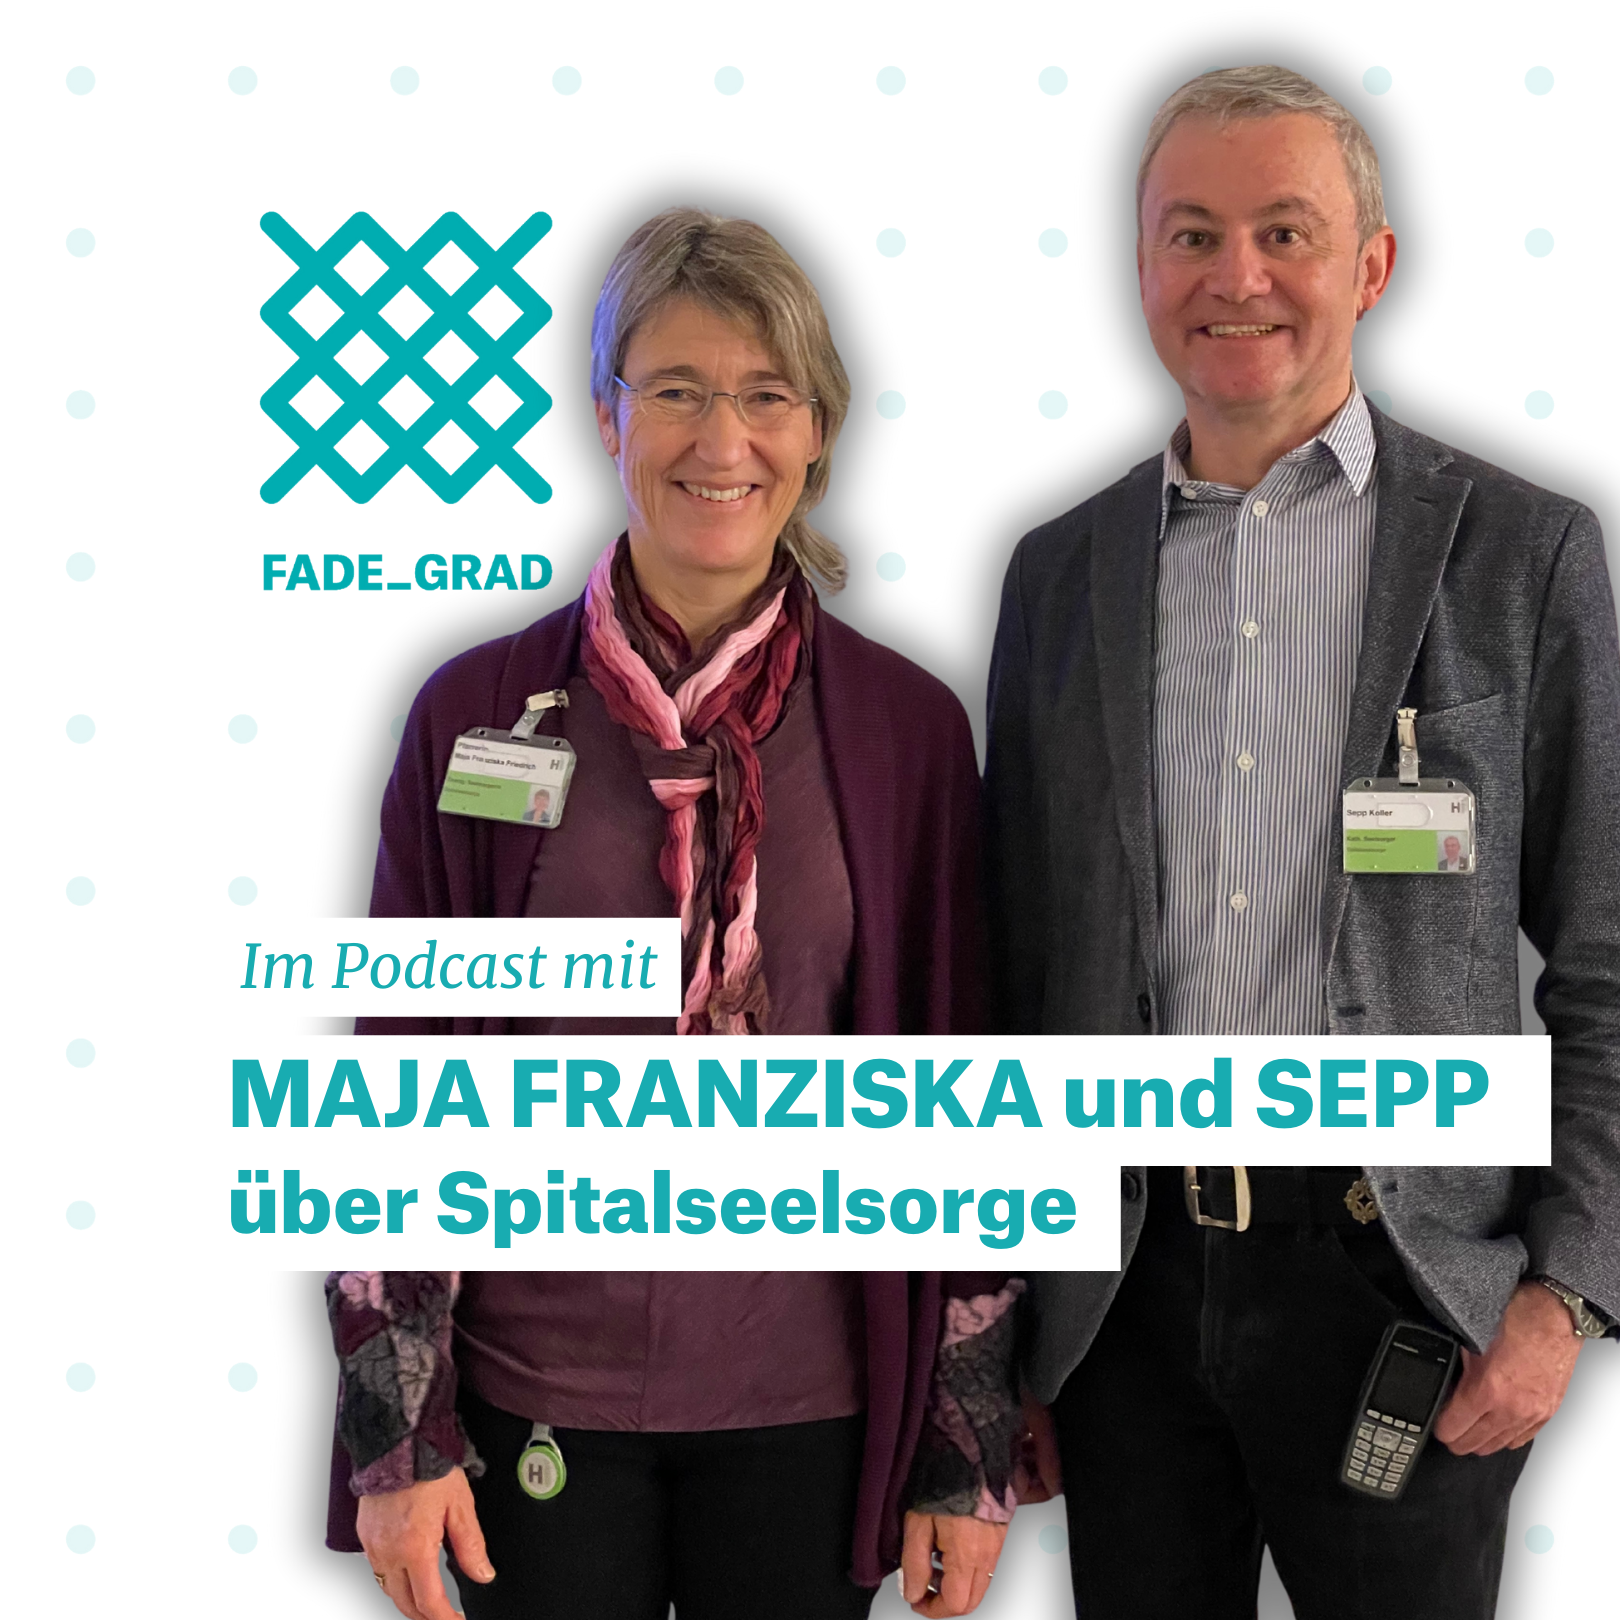 Sie begleiten Sterbende, trösten Angehörige und entlasten Pflegende: Maja Franziska Friedrich und Sepp Koller gehören zum ökumenischen Team der Spitalseelsorge im Kantonsspital St.Gallen.